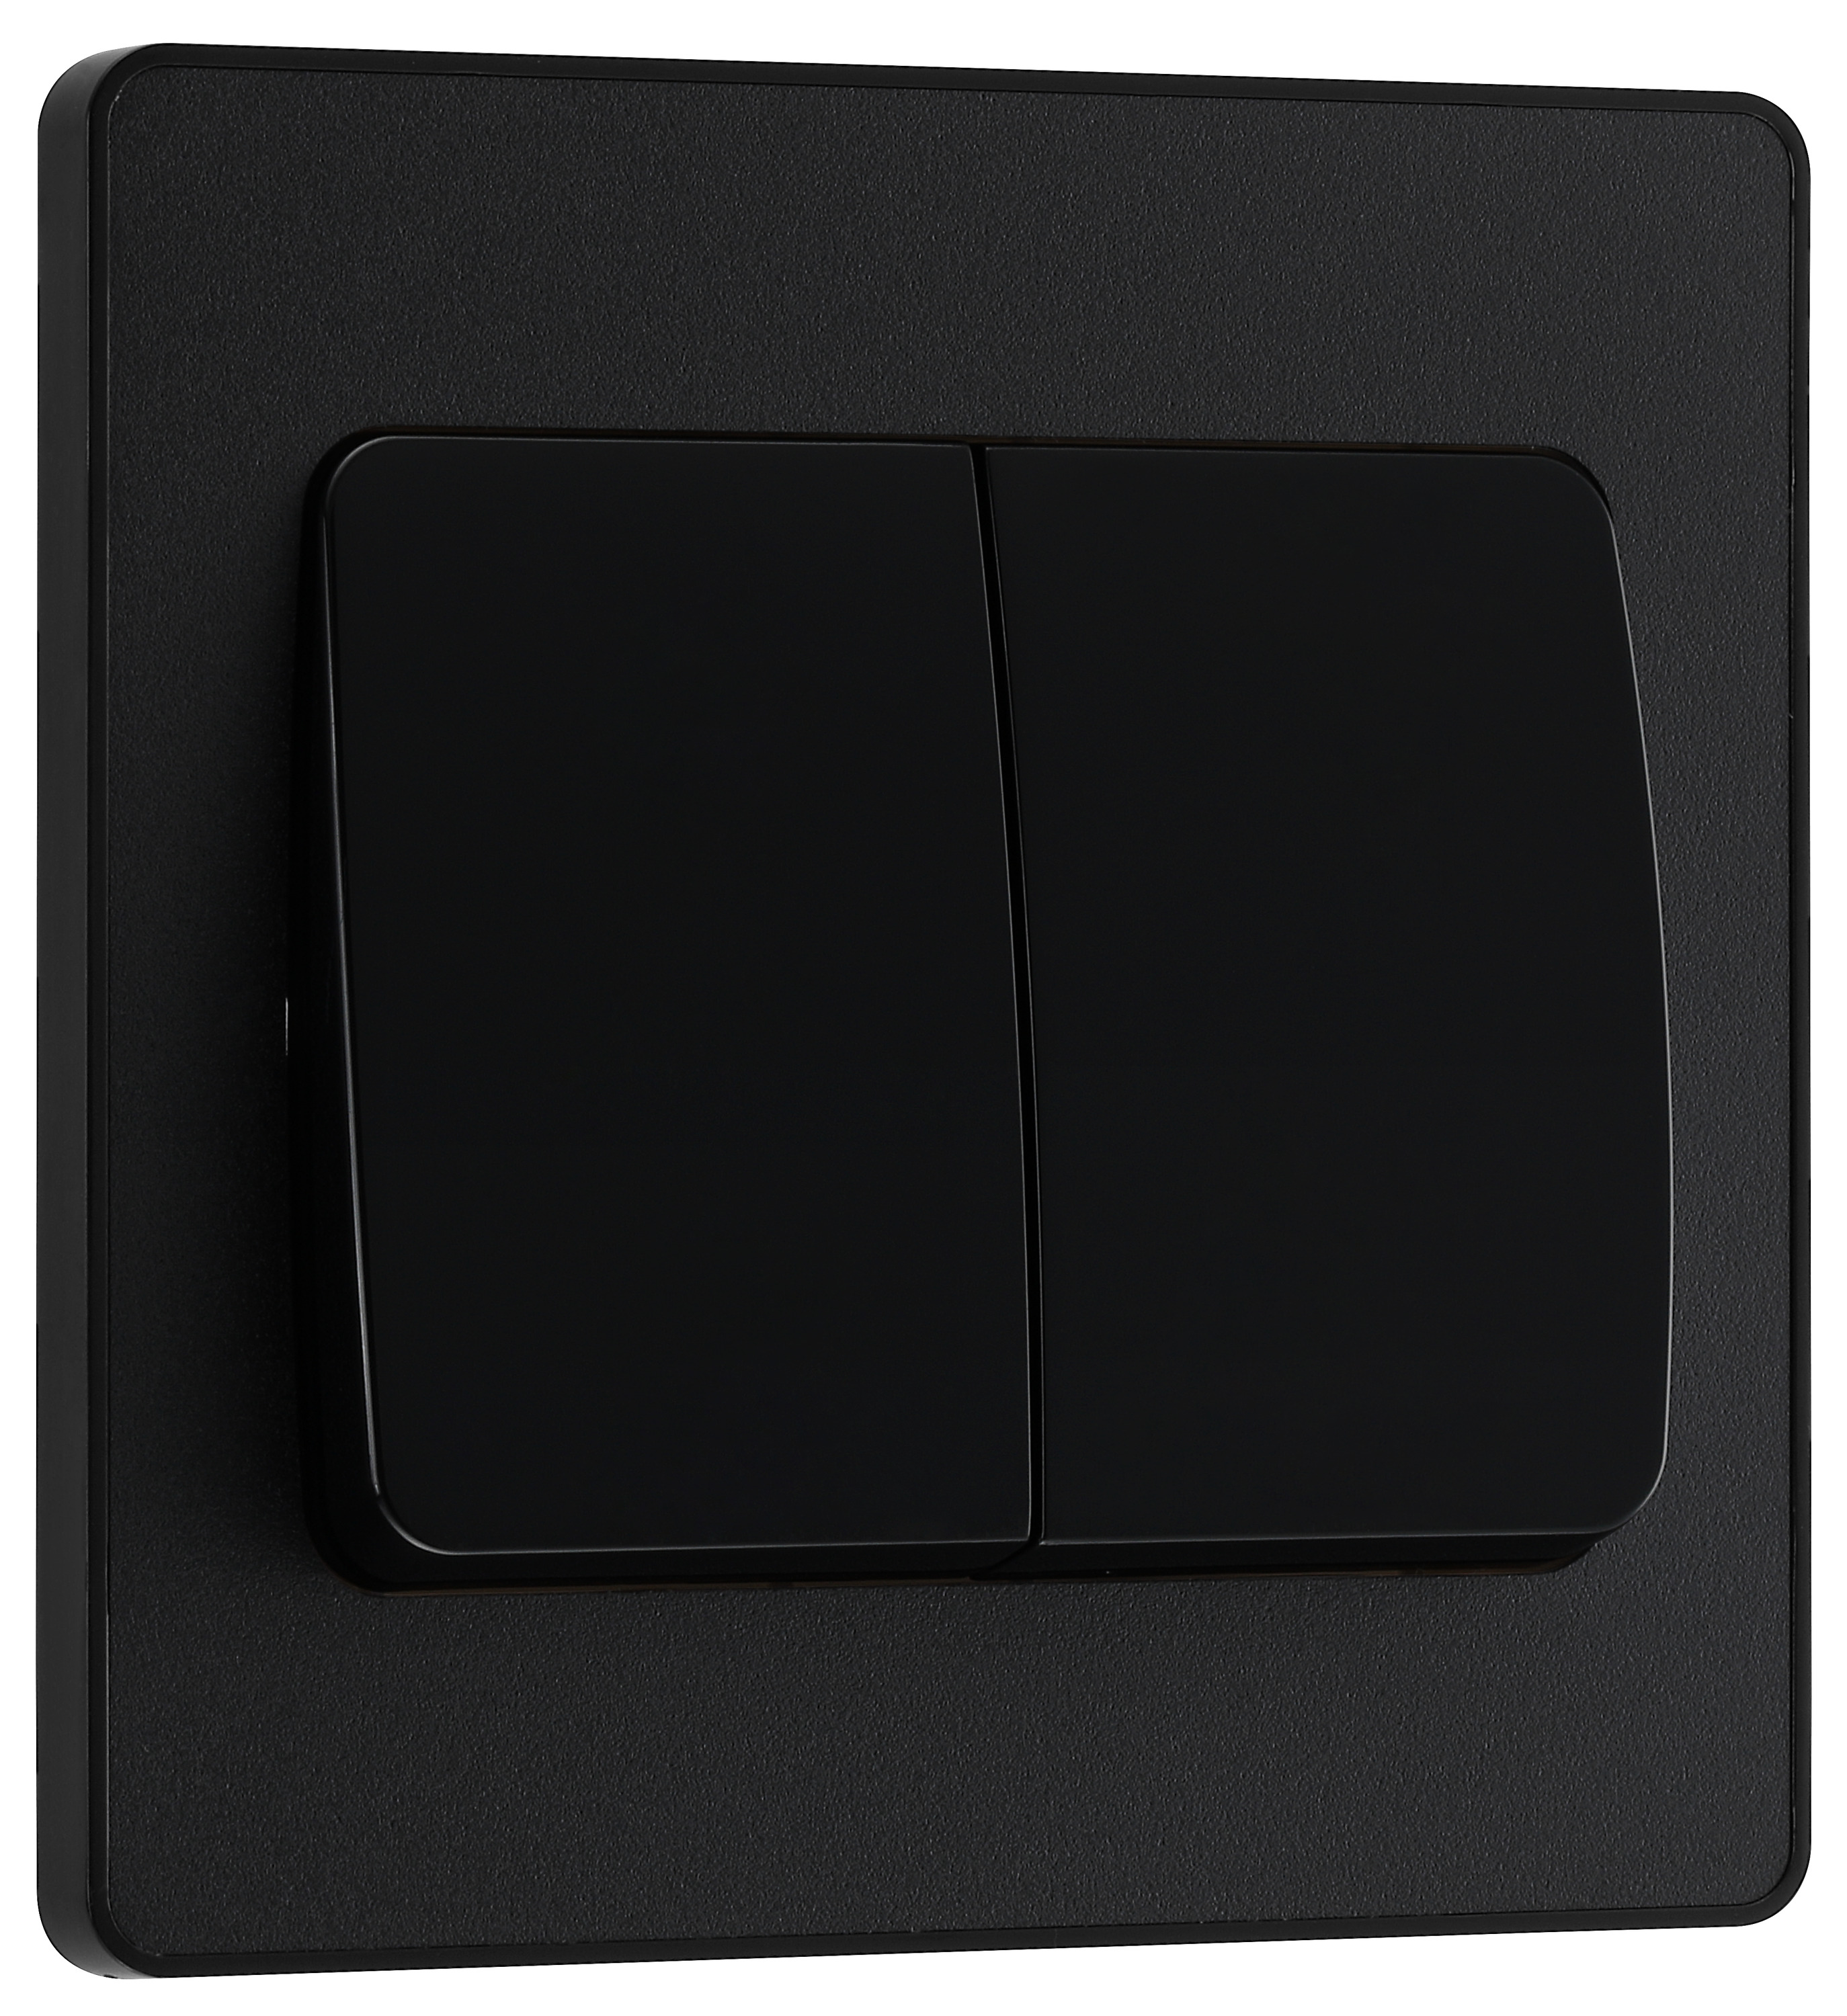 Image of BG Evolve Matt Black 20A 16Ax Wide Rocker Double Light Switch - 2 Way